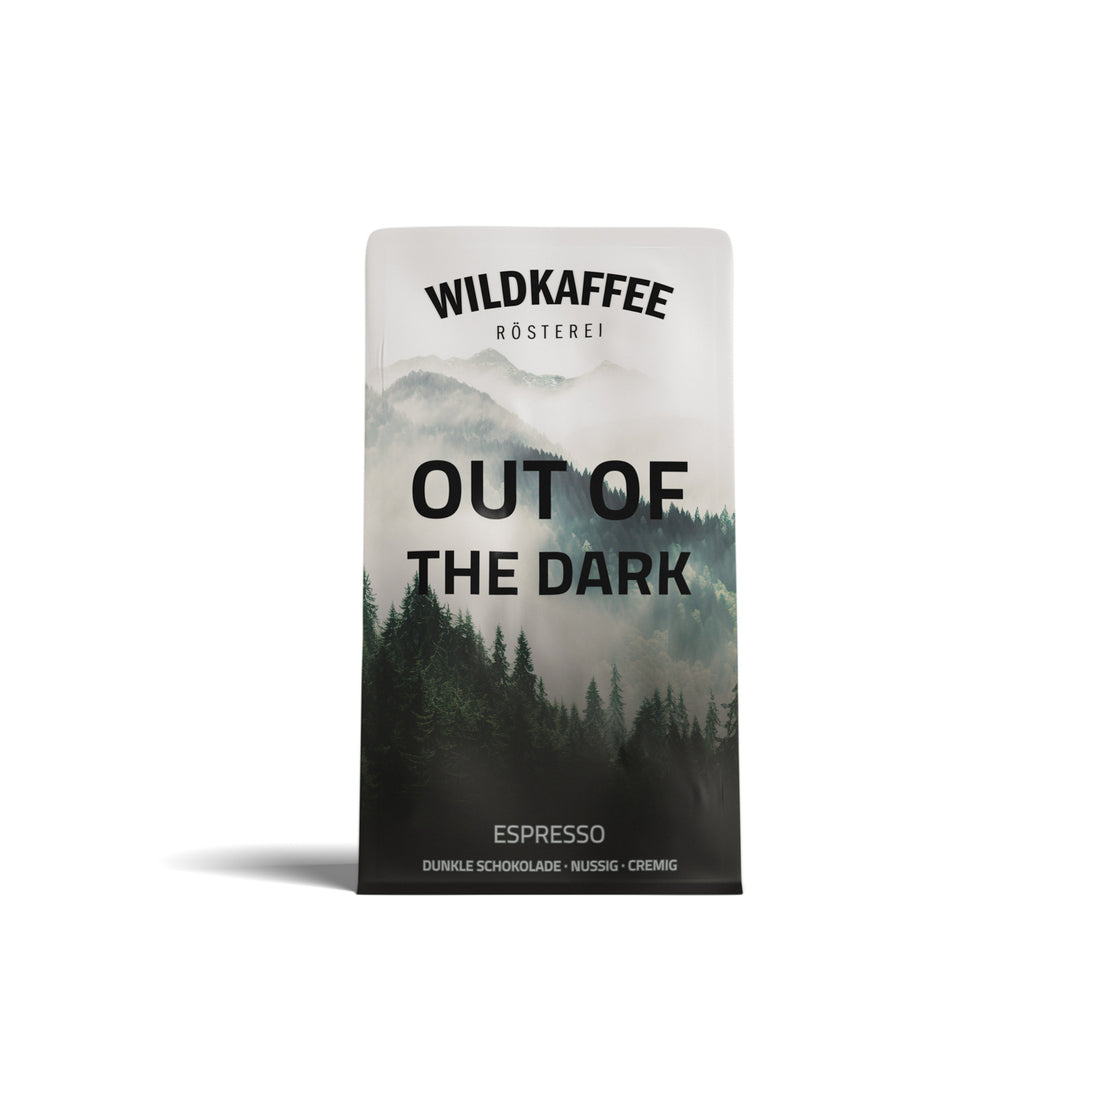 out-of-the-dark-espresso-wildkaffee-oesterreich